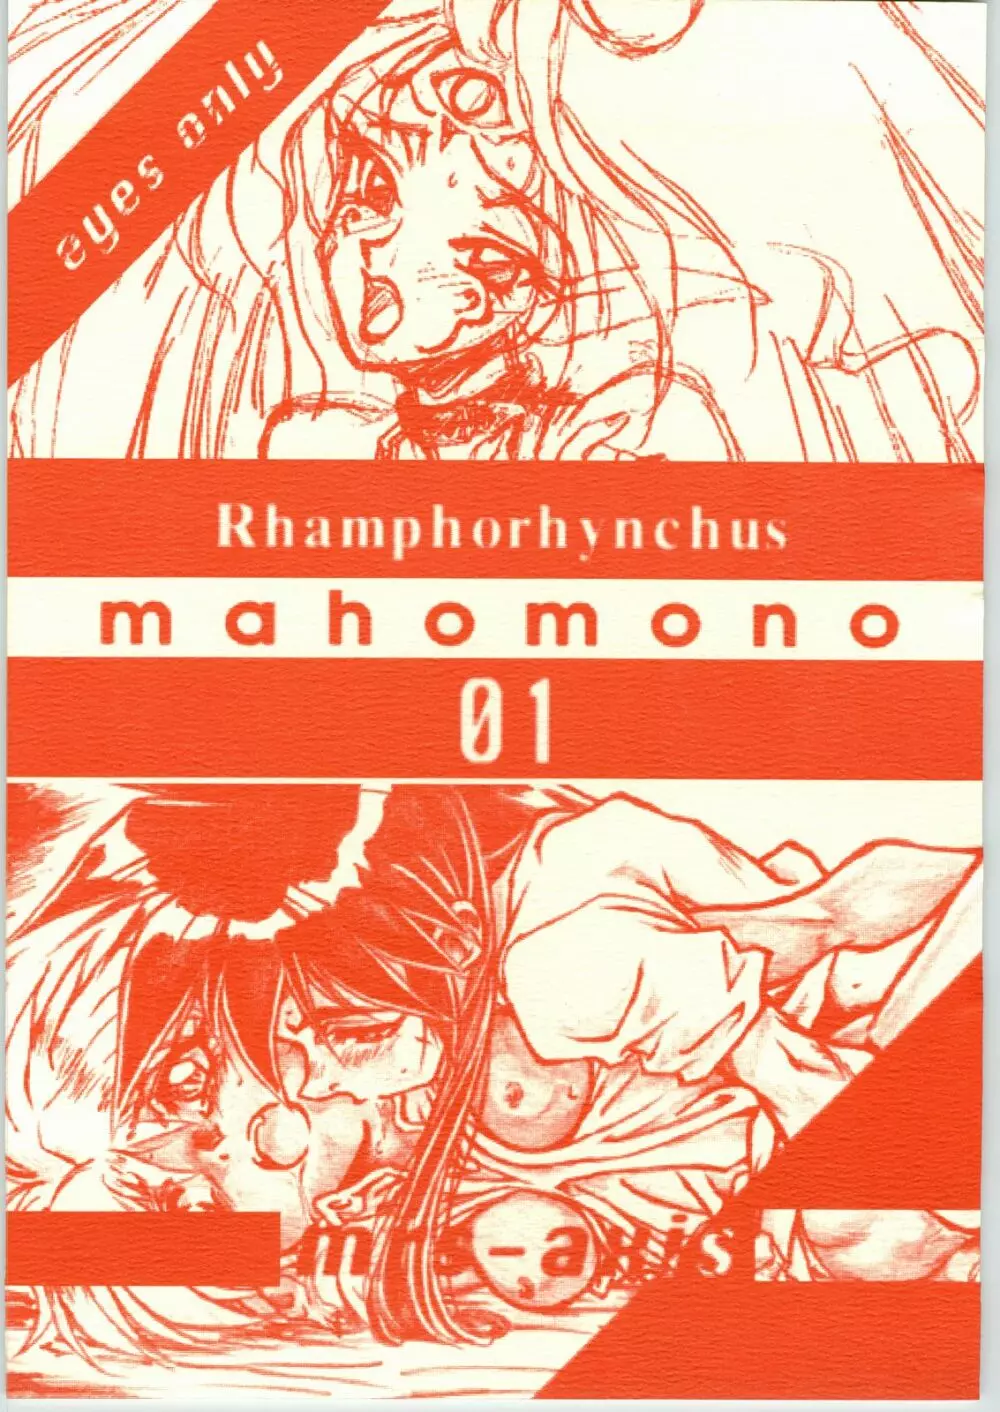 Mahomono - page1